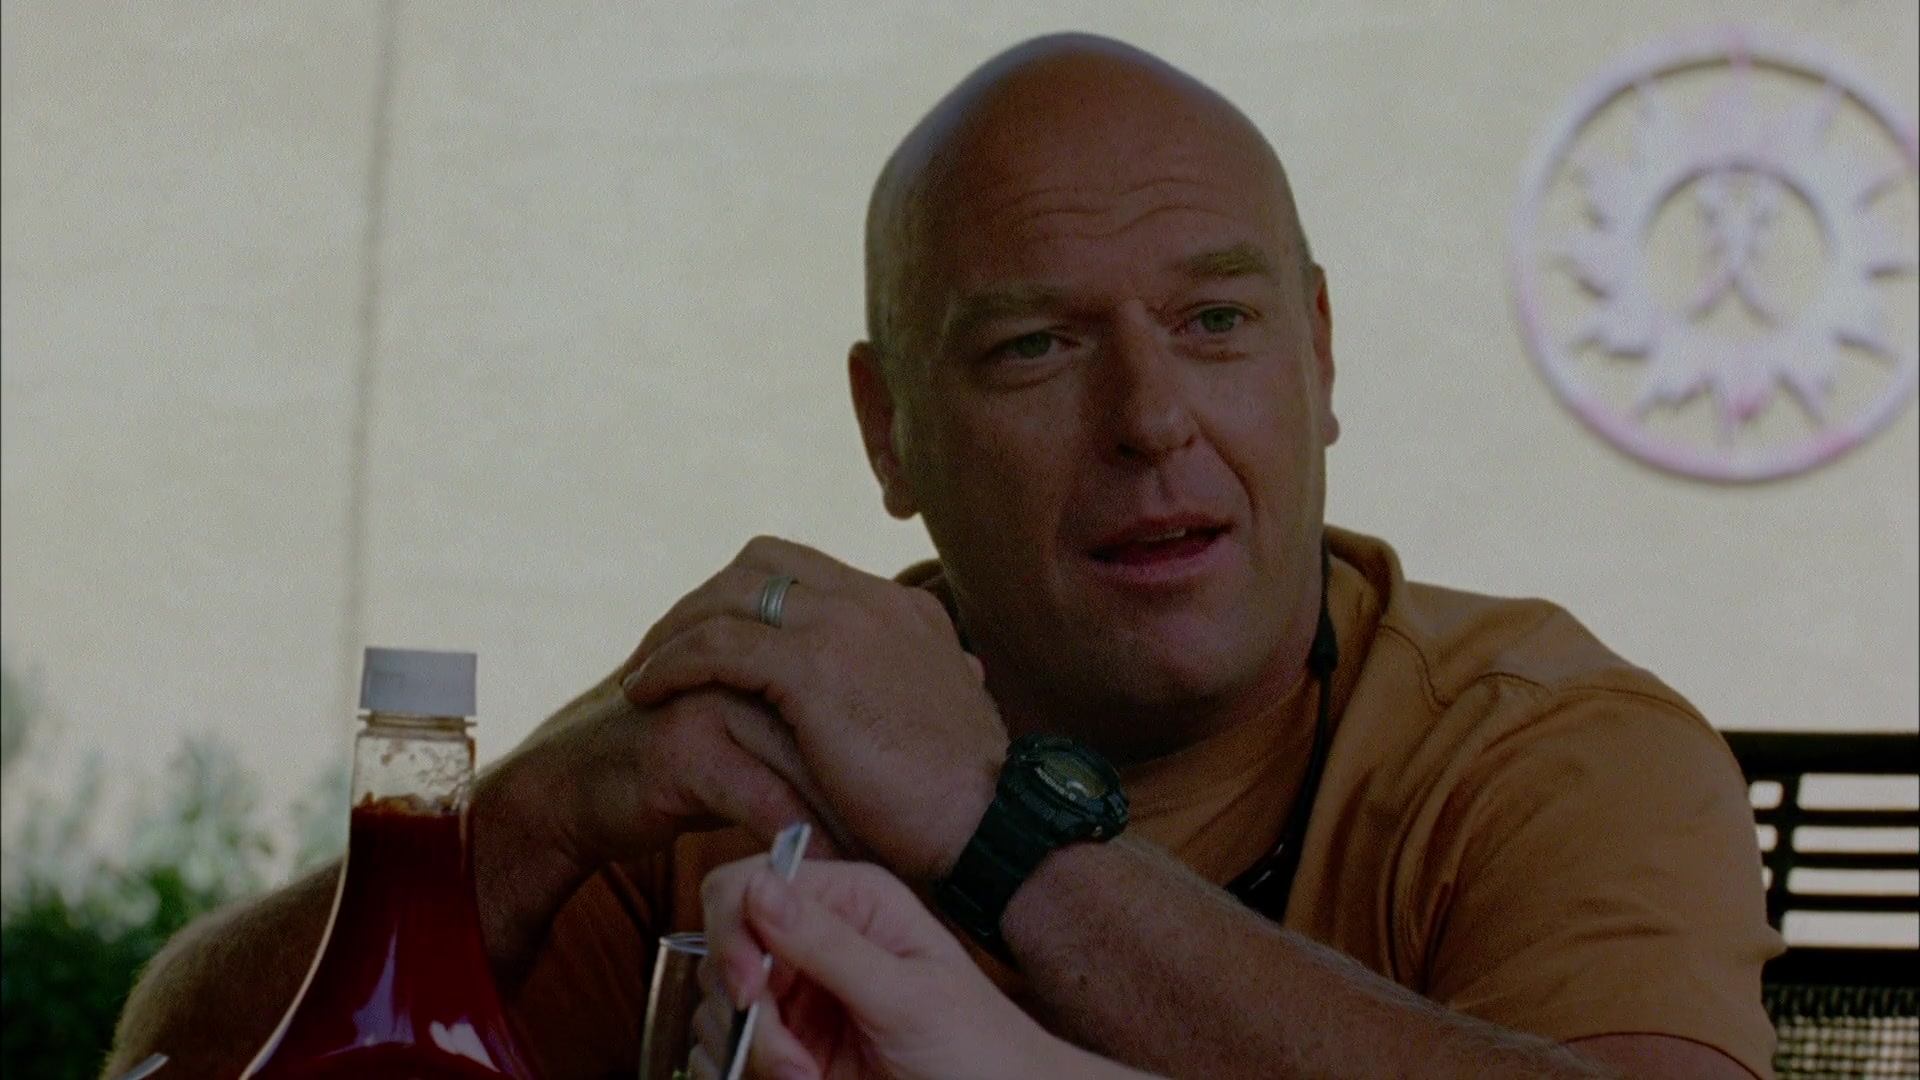 Casio G-Shock Wrist Watch Worn by Dean Norris (Hank Schrader) in Breaking B...